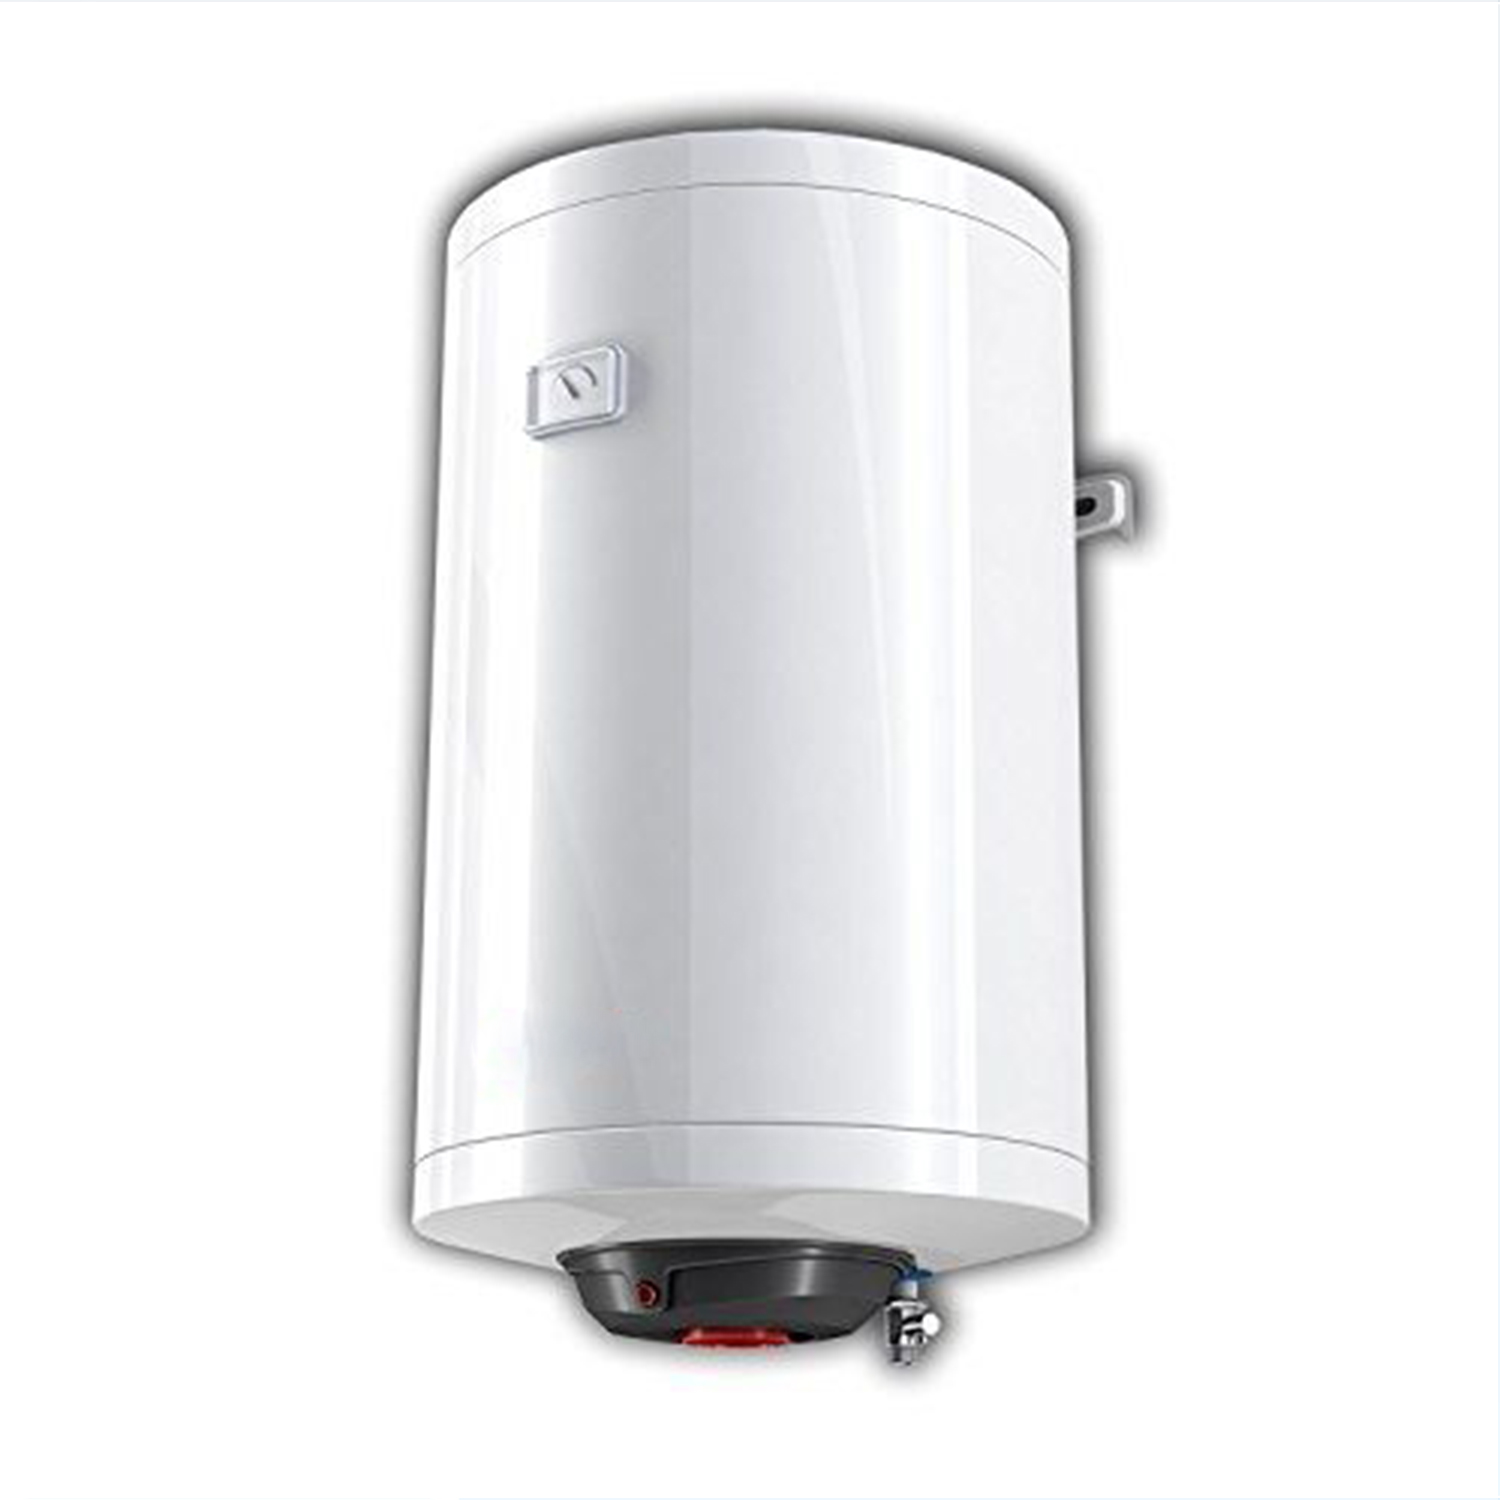 Elektro-Warmwasserspeicher Promotec 120 Liter von MagicSAN | Heizung